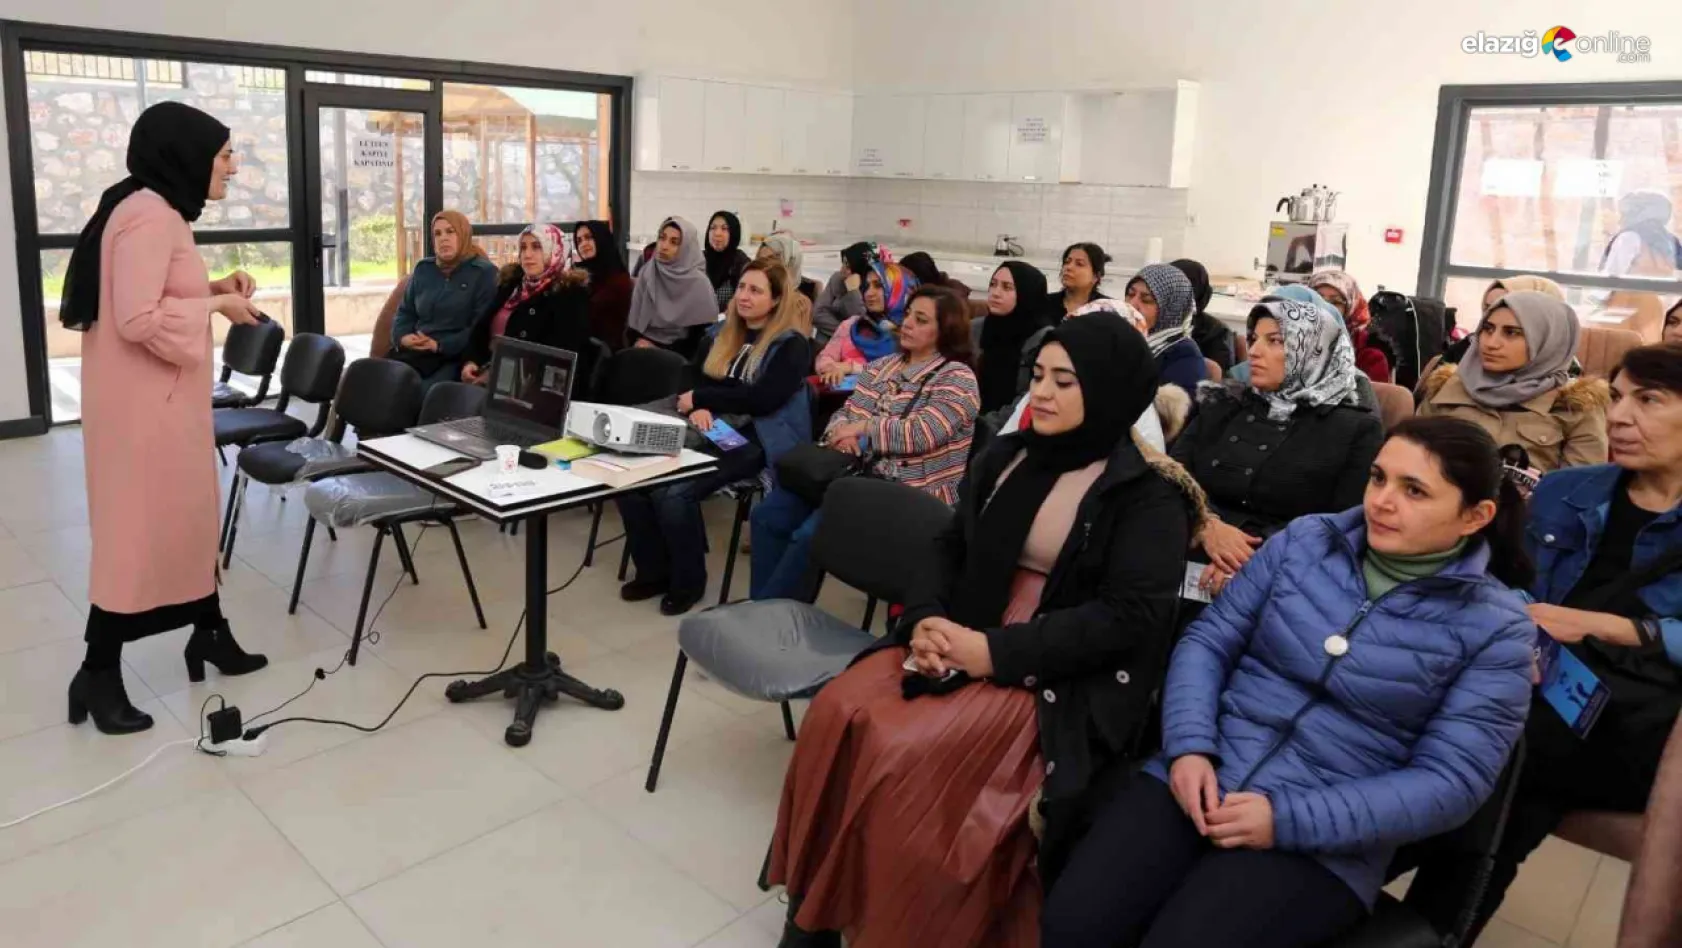 Elazığ Belediyesi'nden aile içi iletişim semineri